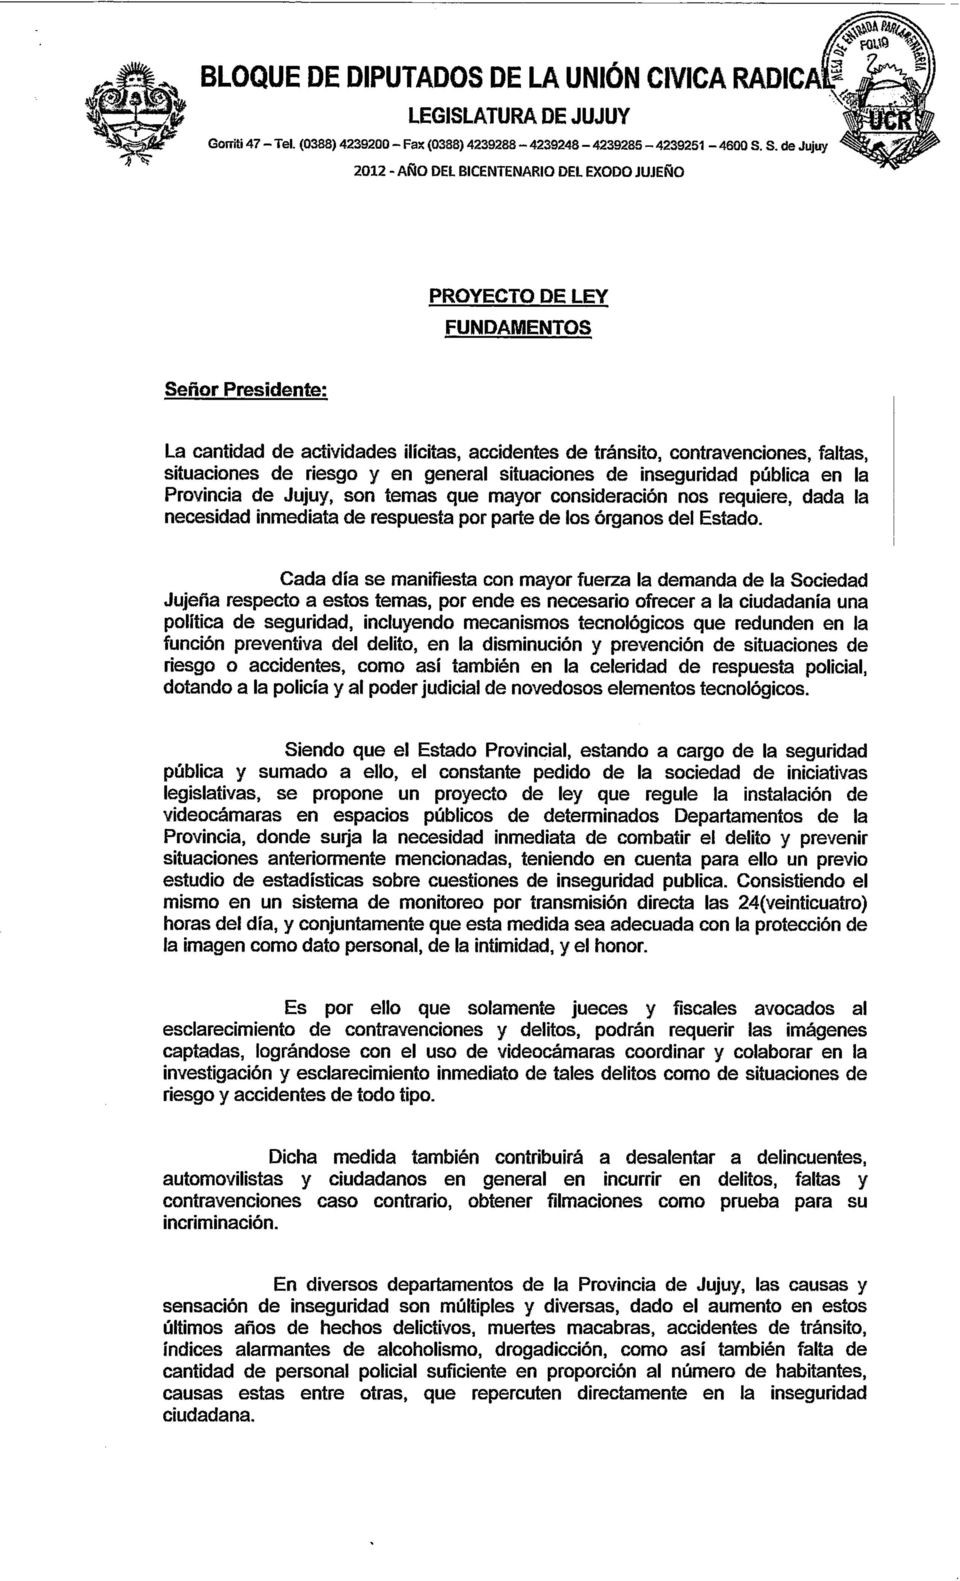 inseguridad pública en la Provincia de Jujuy, son ternas que mayor consideración nos requiere, dada la necesidad inmediata de respuesta por parte de los órganos del Estado.